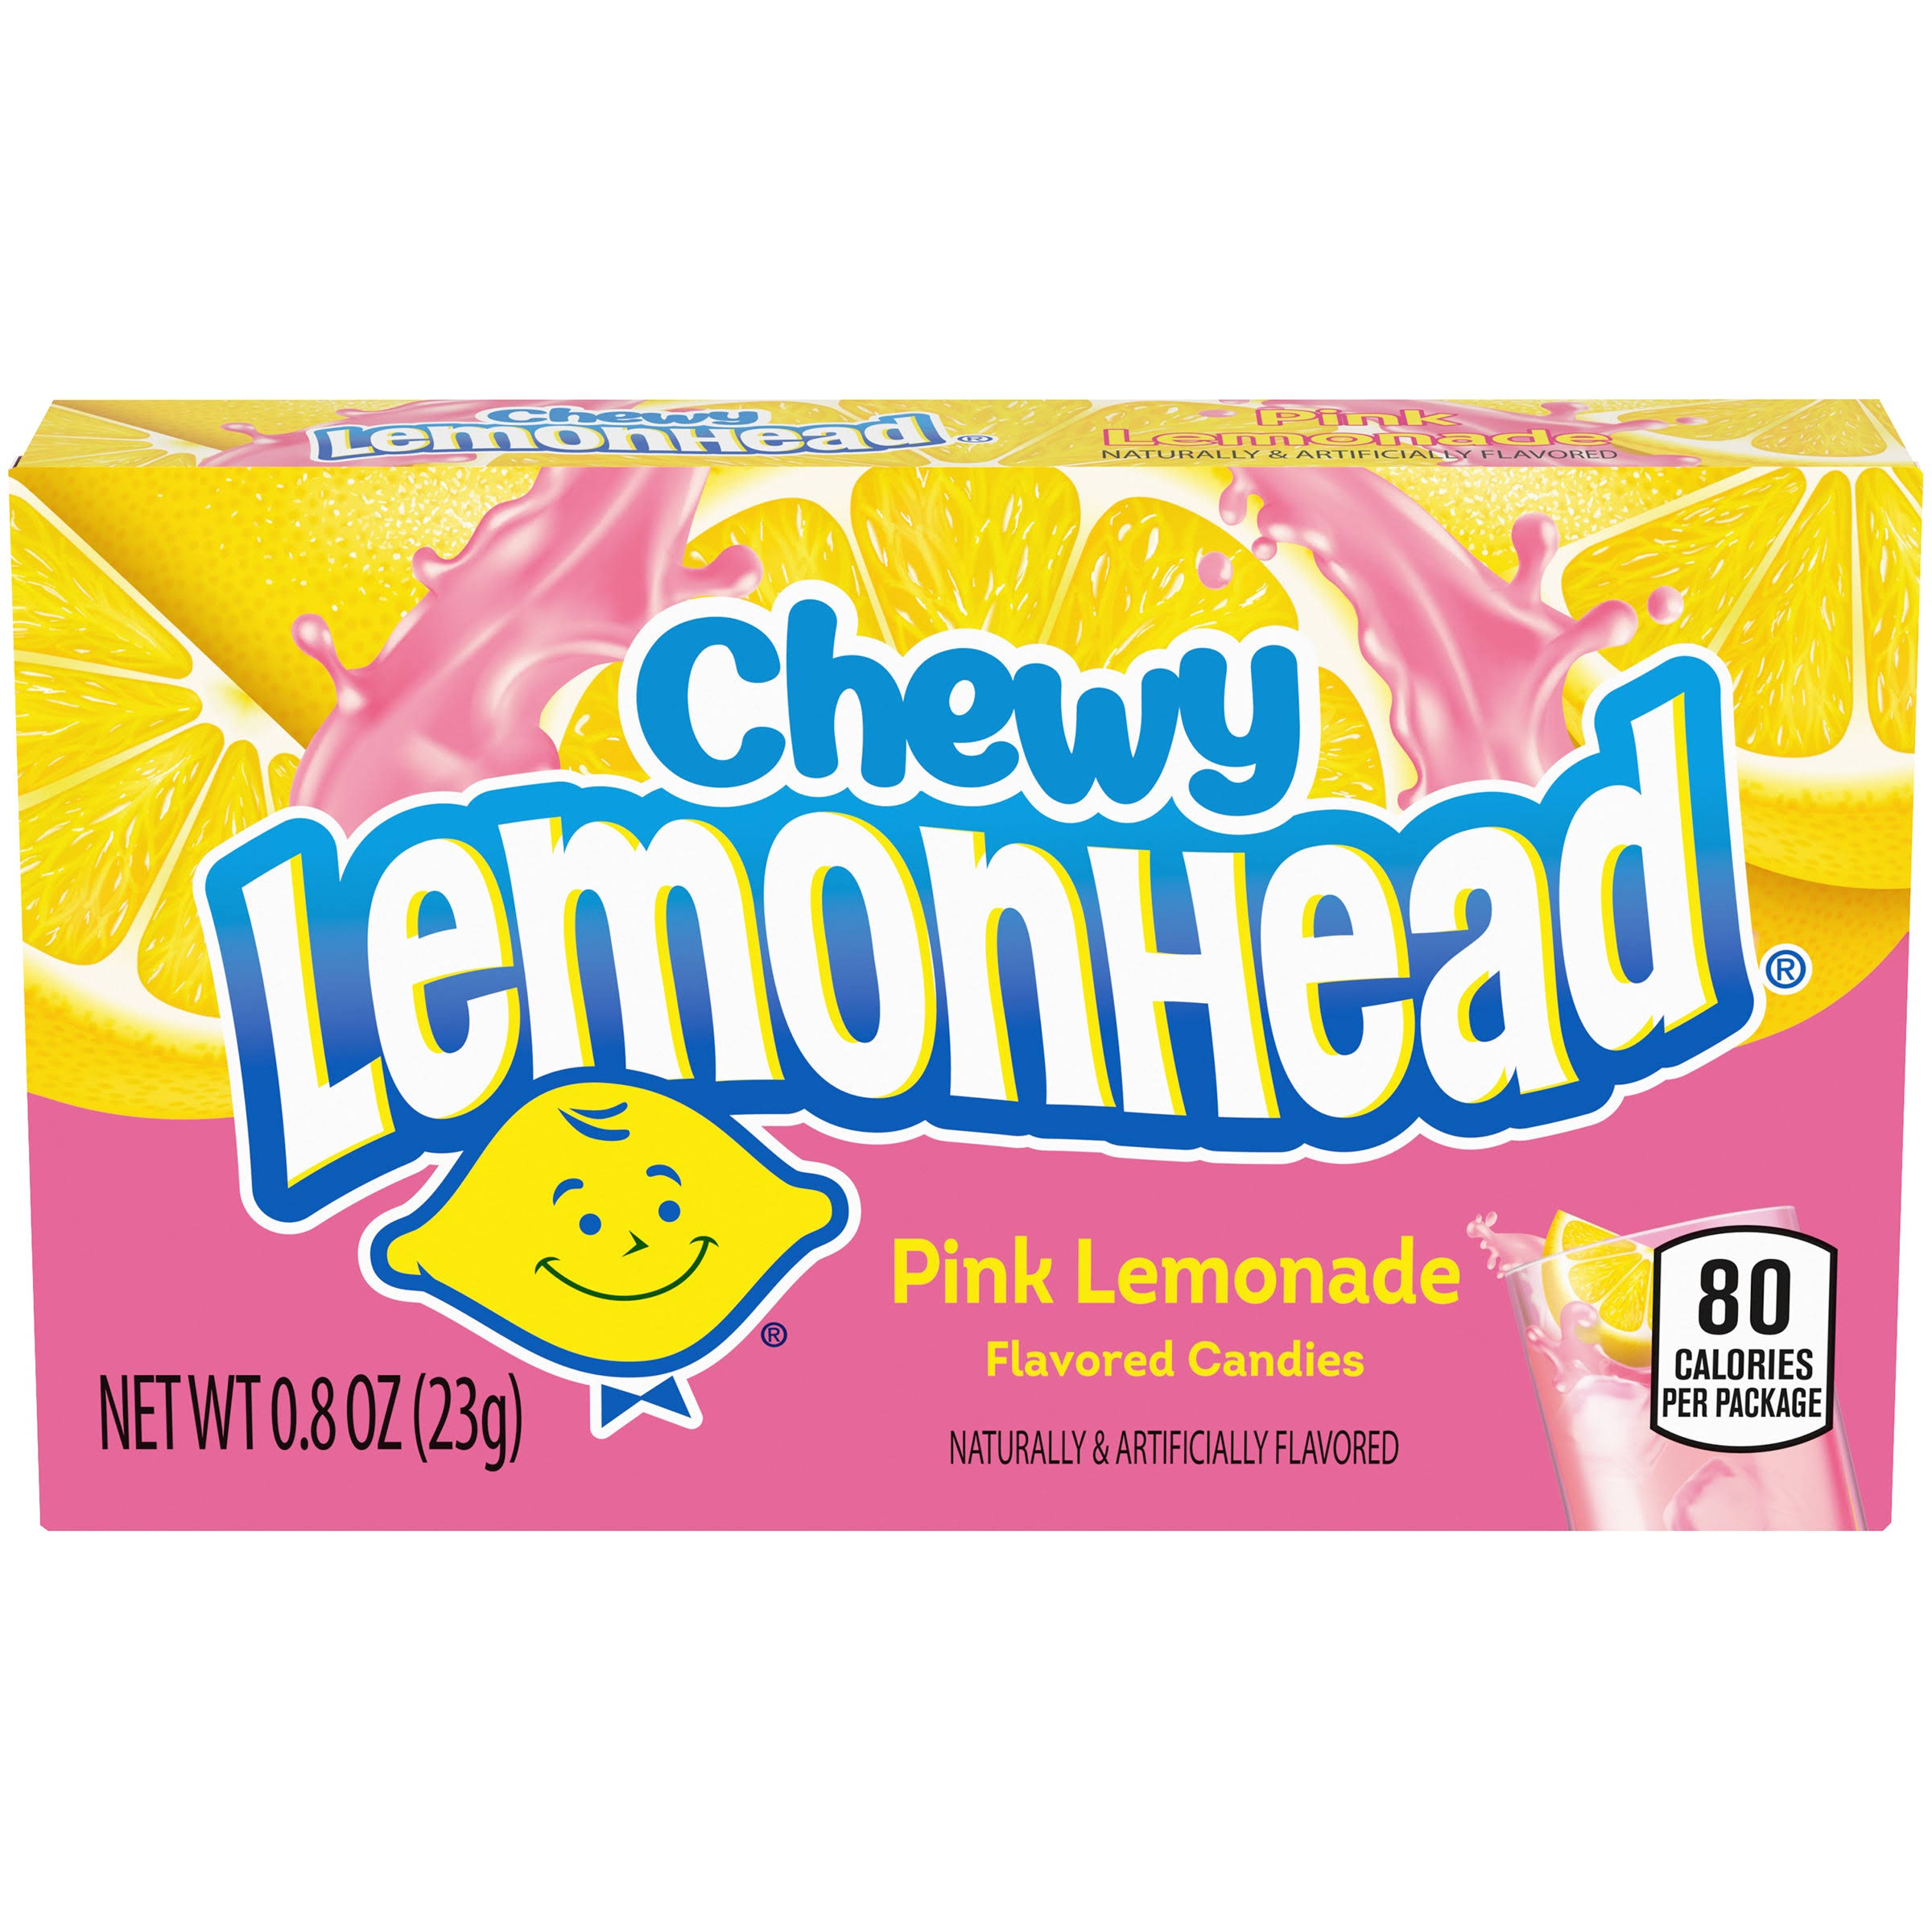 Chewy Lemonhead Candies - Pink Lemonade Flavored